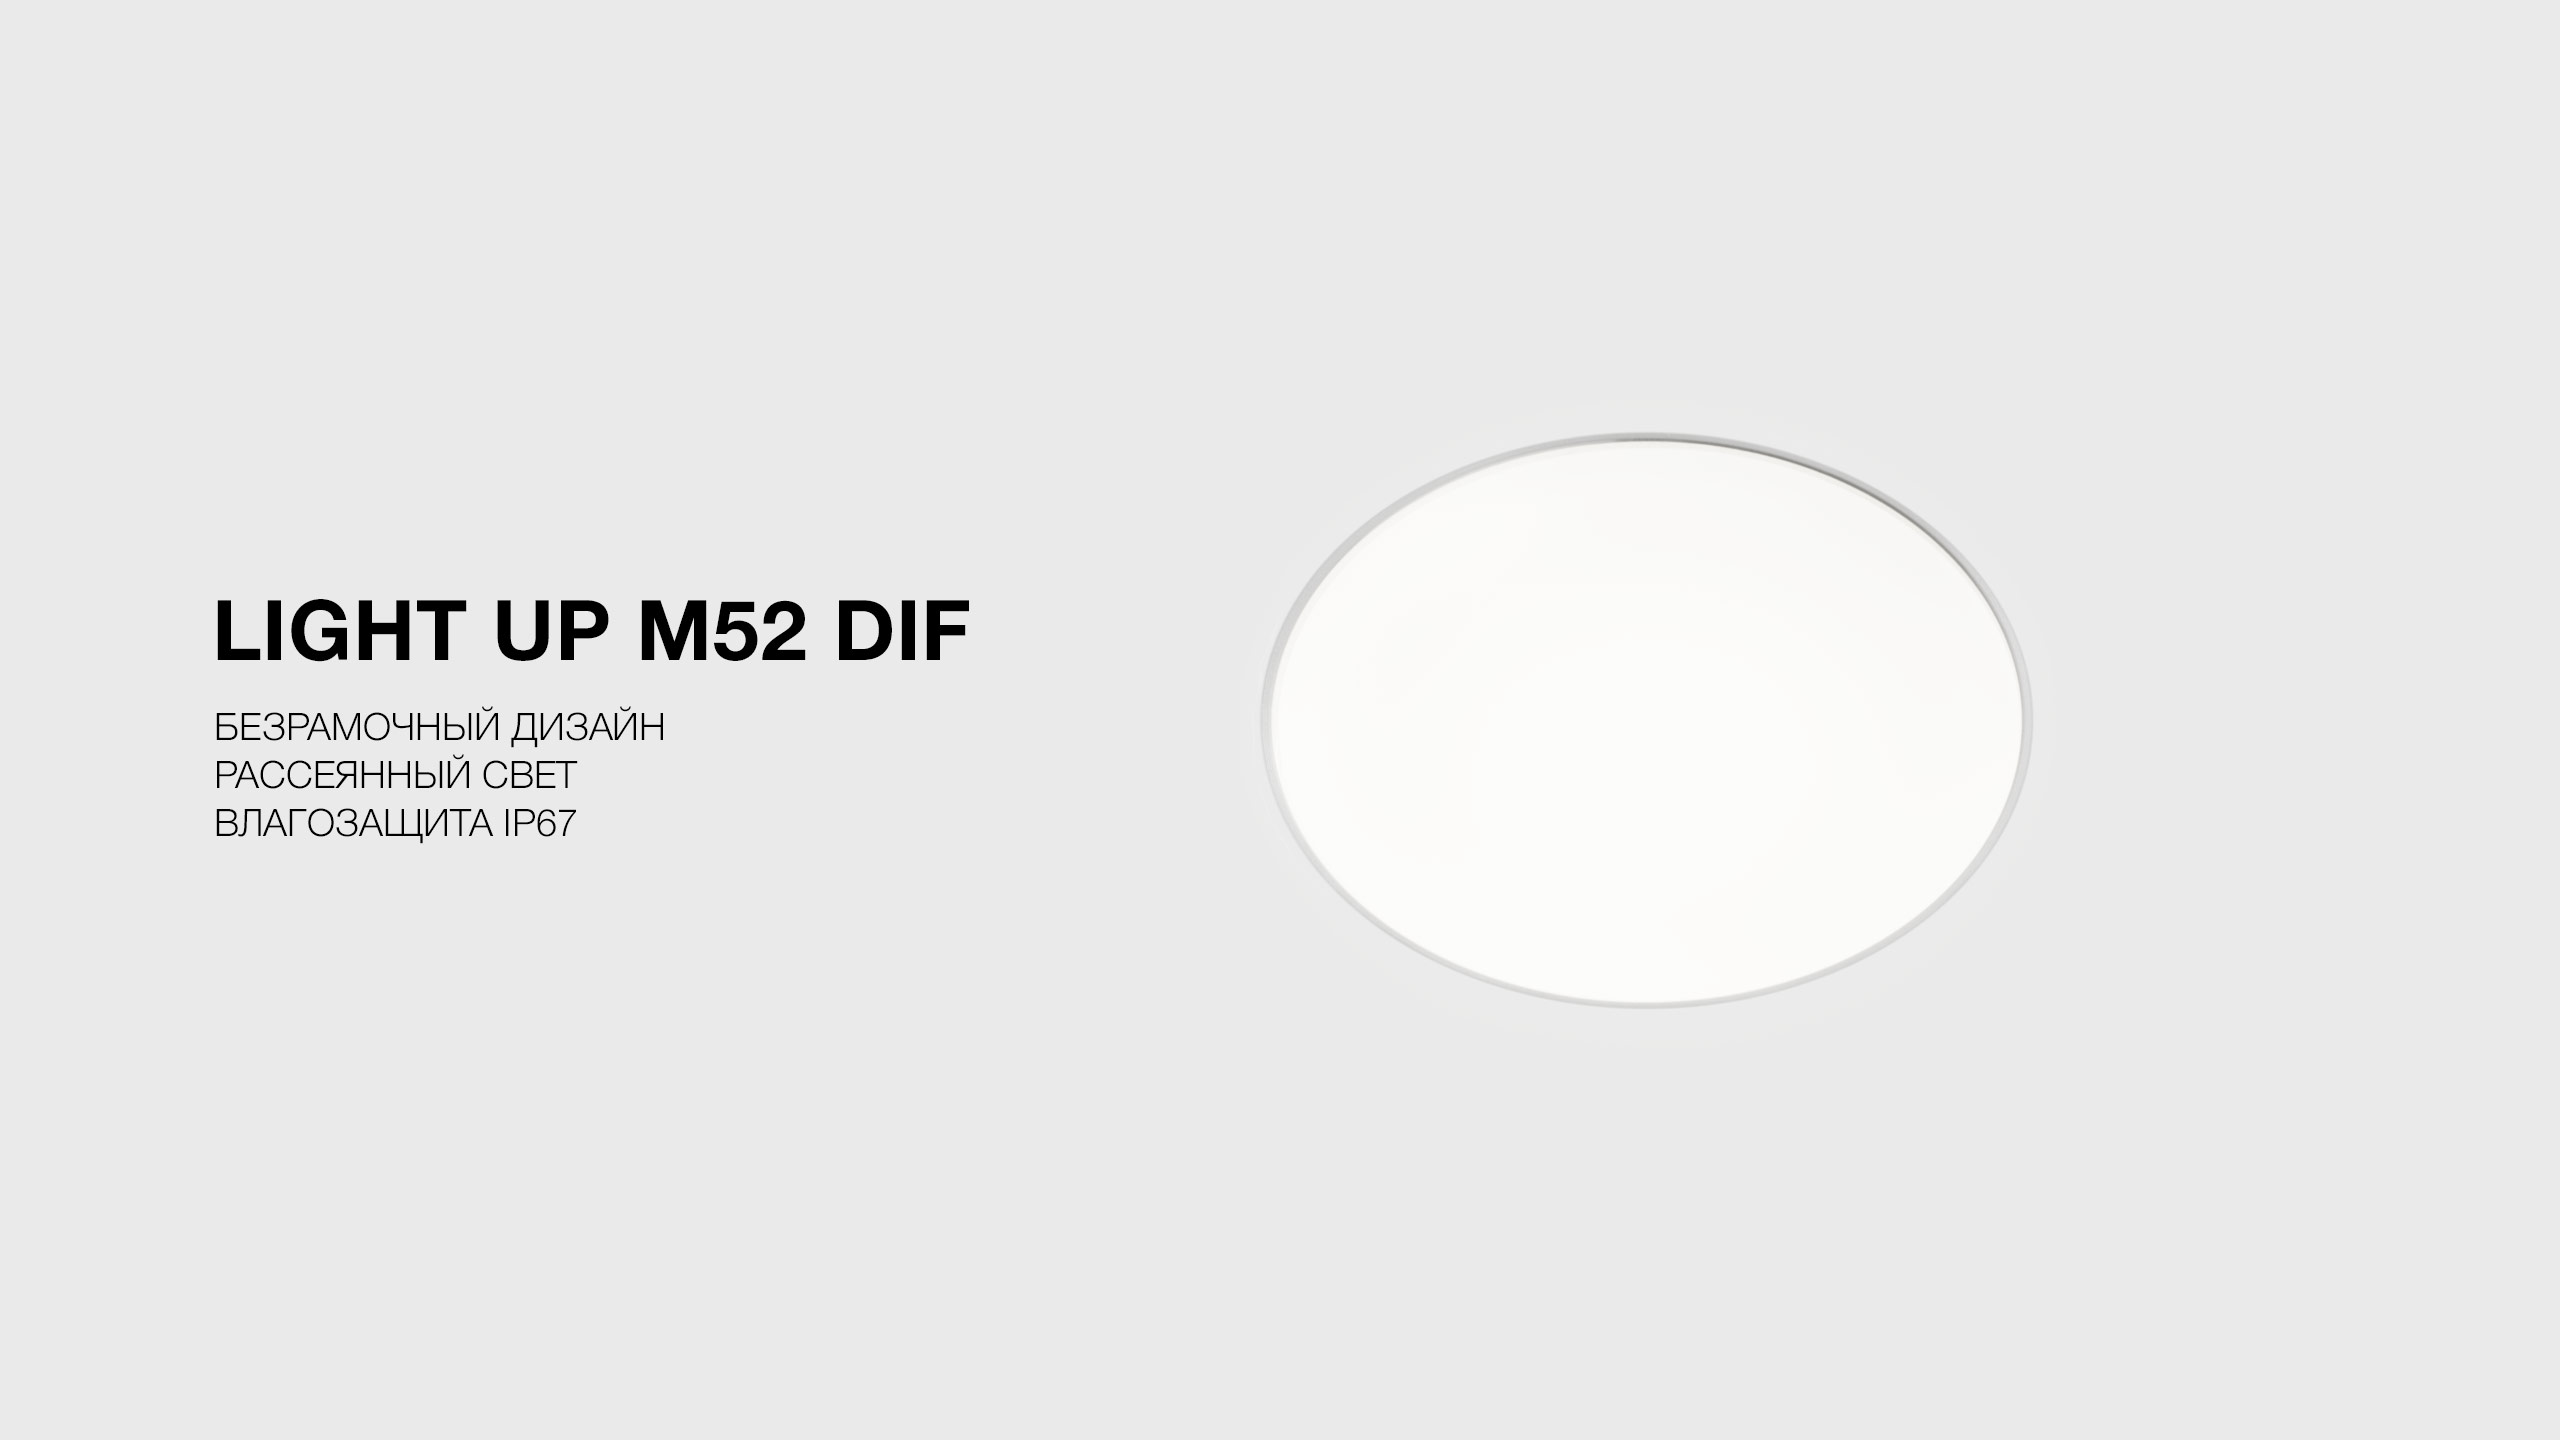 LIGHT UP M52 DIF